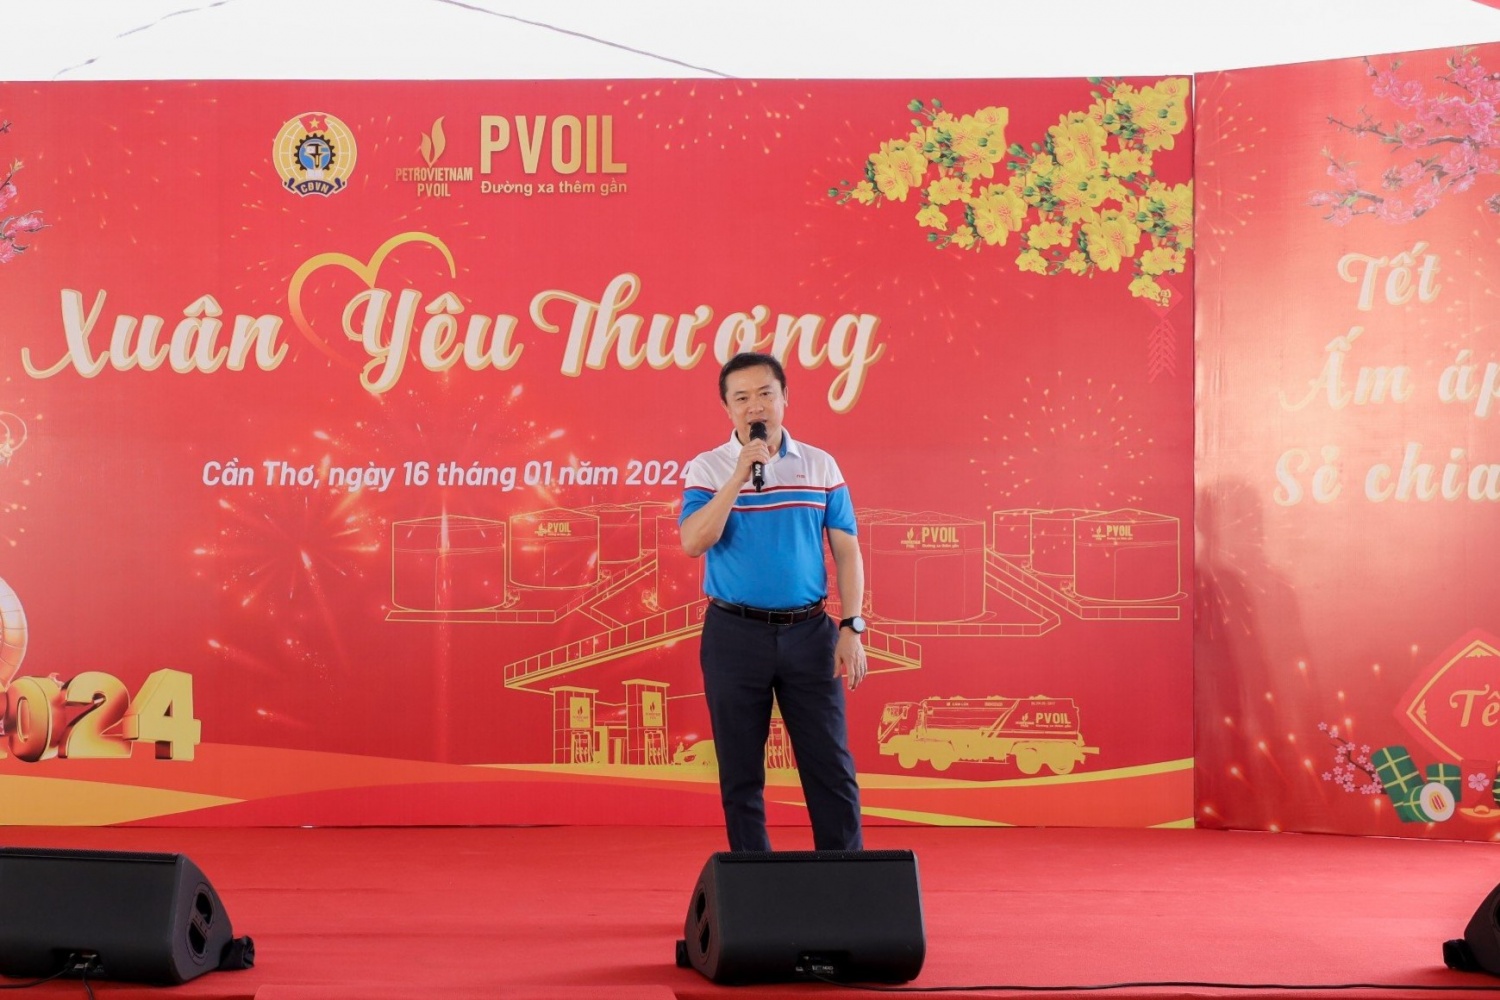 Ông Võ Khánh Hưng – Phó Bí thư Đảng ủy, Phó Tổng Giám đốc Tổng công ty phát biểu tại chương trình